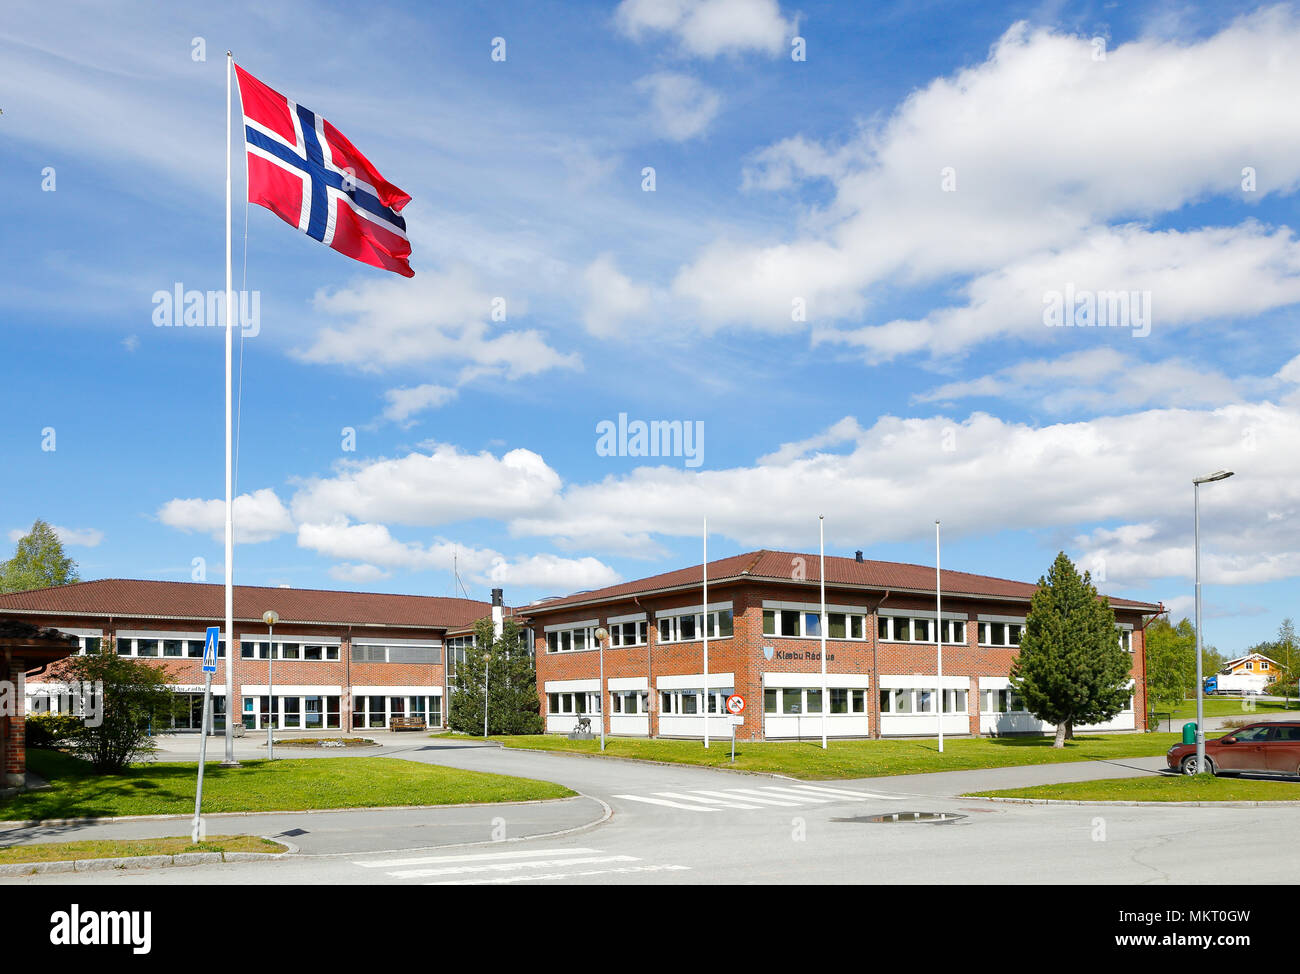 La Norvège, l'Klabu - 30 mai 2015 : l'hôtel de ville d'Klabu avec un municipal hissé pavillon norvégien en face de l'immeuble. Banque D'Images